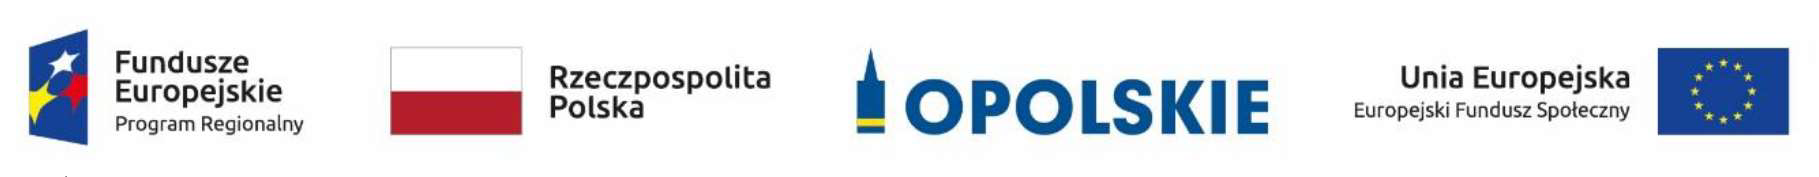 Znaki - loga: Funduszy Europejskich, barwami Rzeczpospolitej Polskiej, oficjalne logo promocyjne Woj. Opolskiego, znak Unii Europejskiej